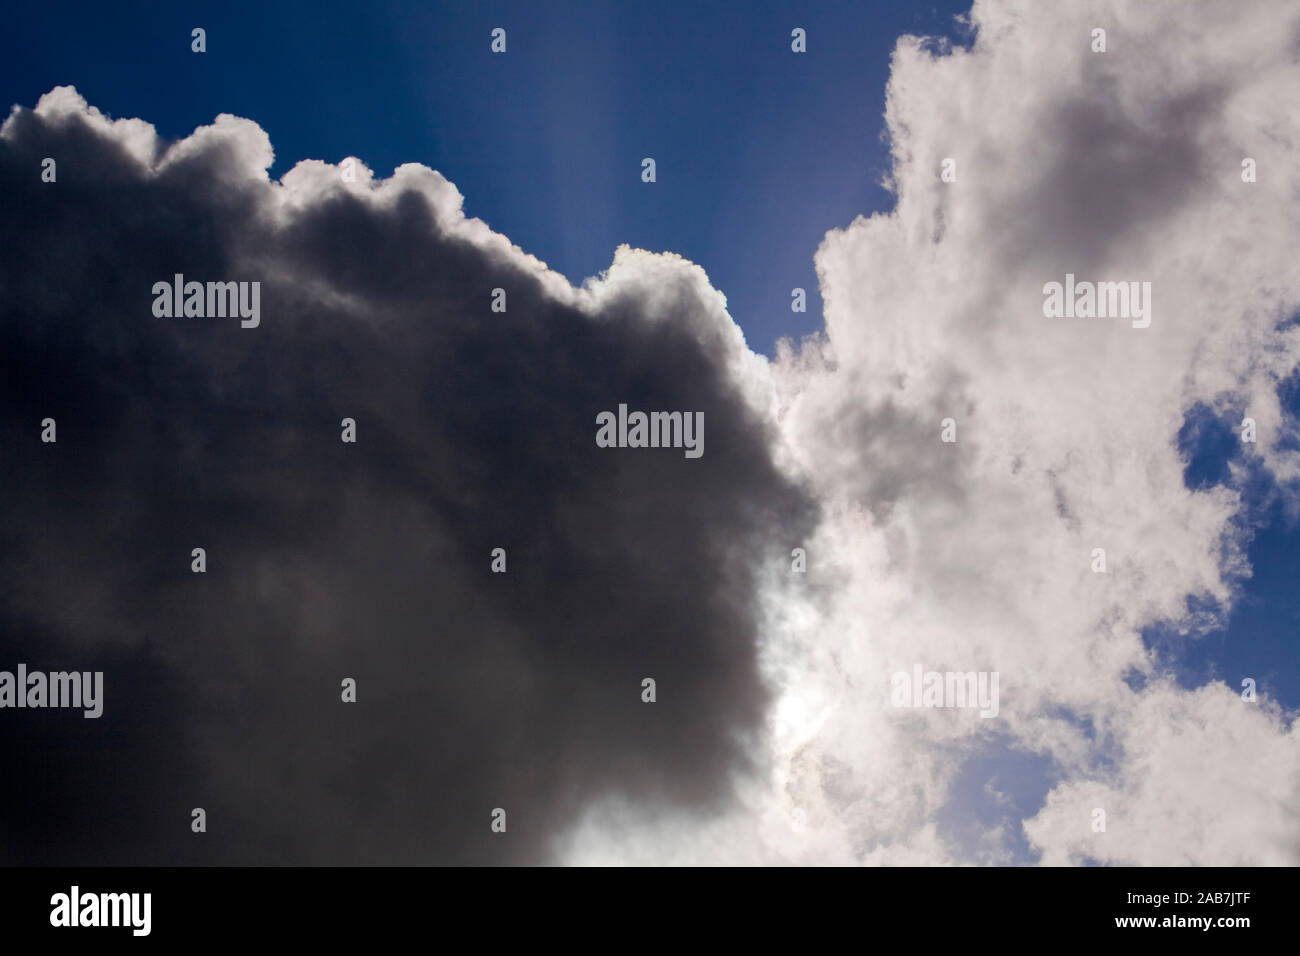 Dunkle Regenwolken und sich auftuermende dichte Quellwolken vor blauem Himmel Stock Photo